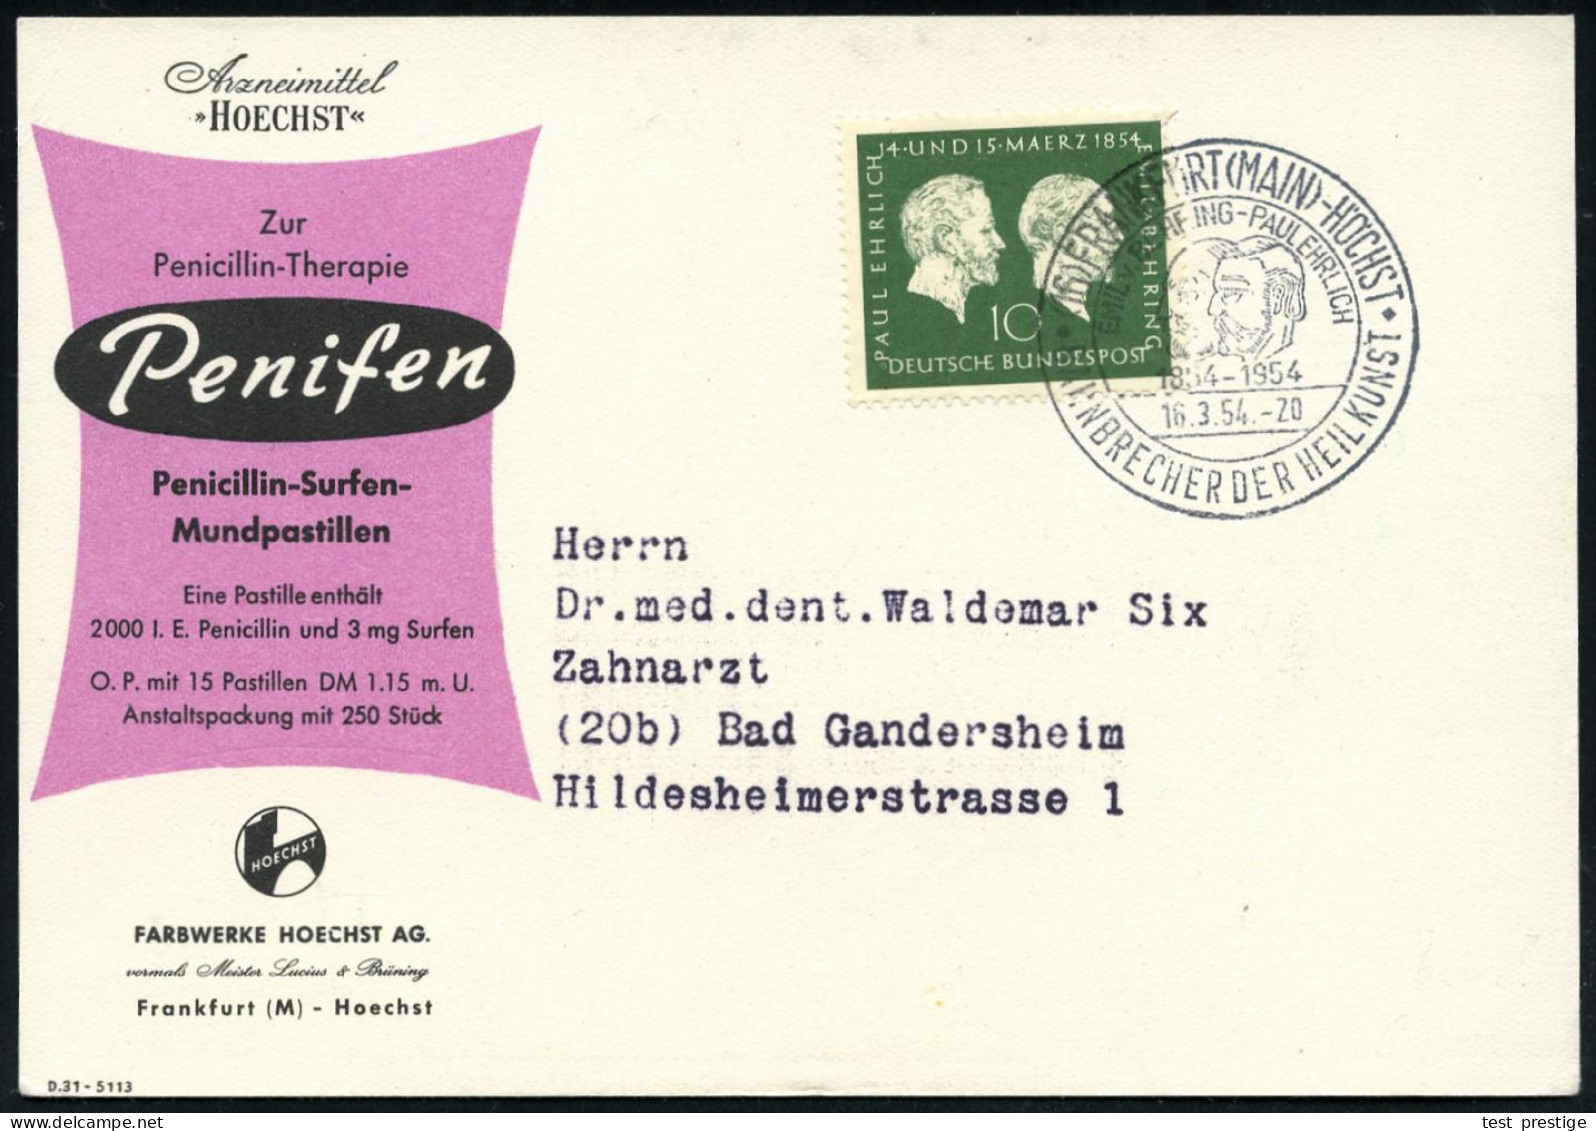 (16) FRANKFURT (MAIN)-HÖCHST/ EMIL V.BEHRING - PAUL EHRLICH/ BAHNBRECHER DER HEILKUNST 1954 (16.3.) SSt = Kopfbilder Ehr - Prix Nobel